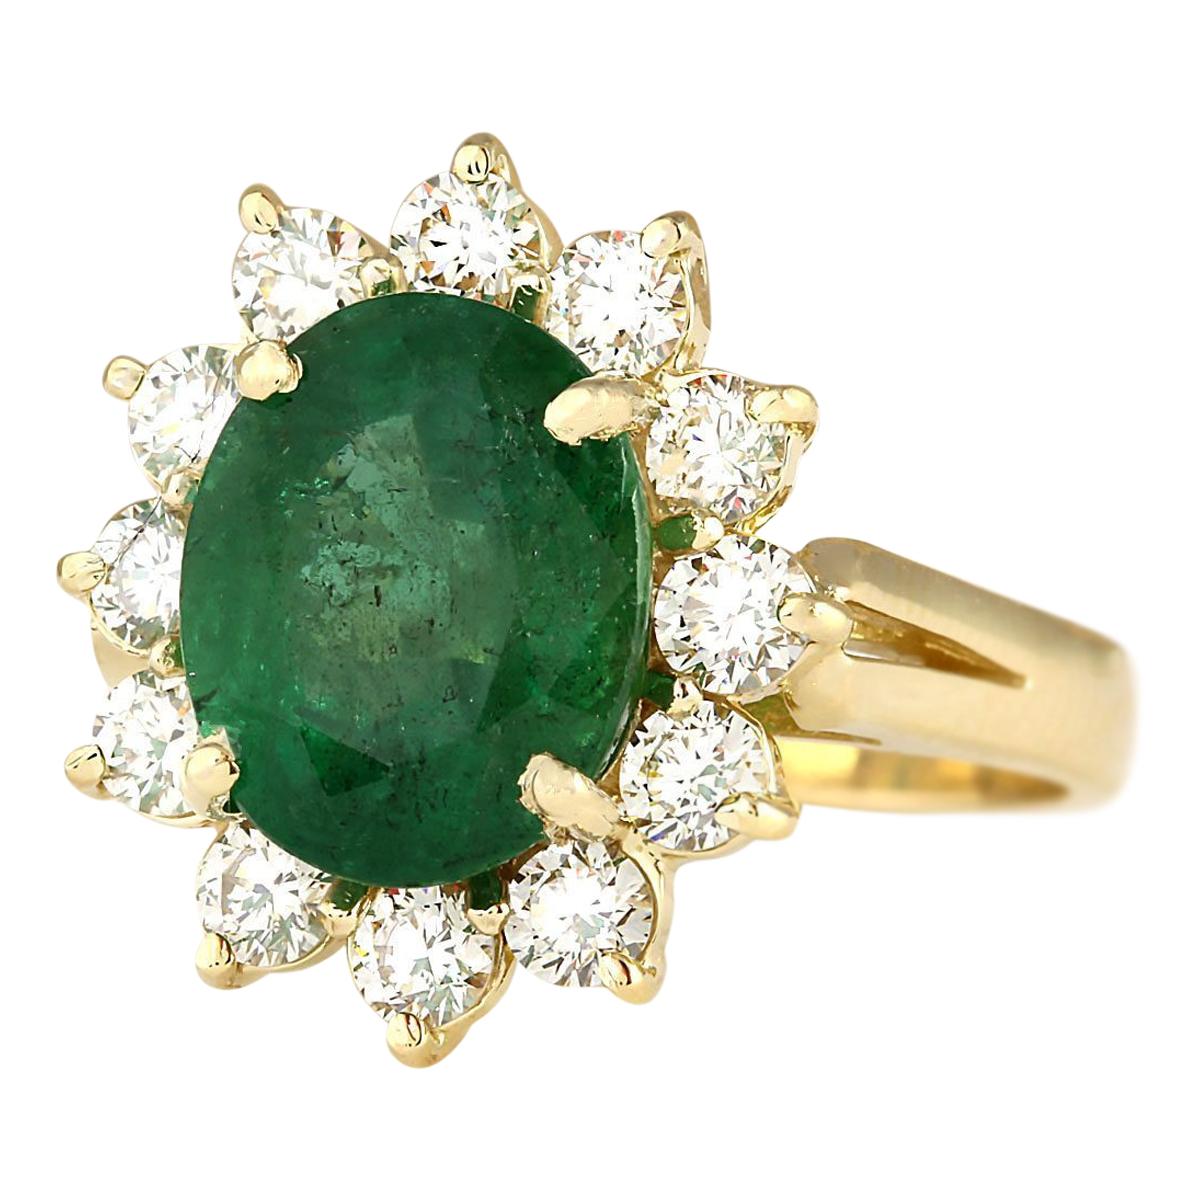 4.33 Carat Natural Emerald 14 Karat Yellow Gold Diamond Ring
Stamped: 14K Yellow Gold
Total Ring Weight: 5.2 Grams
Total Natural Emerald Weight is 3.33 Carat (Measures: 10.00x8.00 mm)
Color: Green
Total Natural Diamond Weight is 1.00